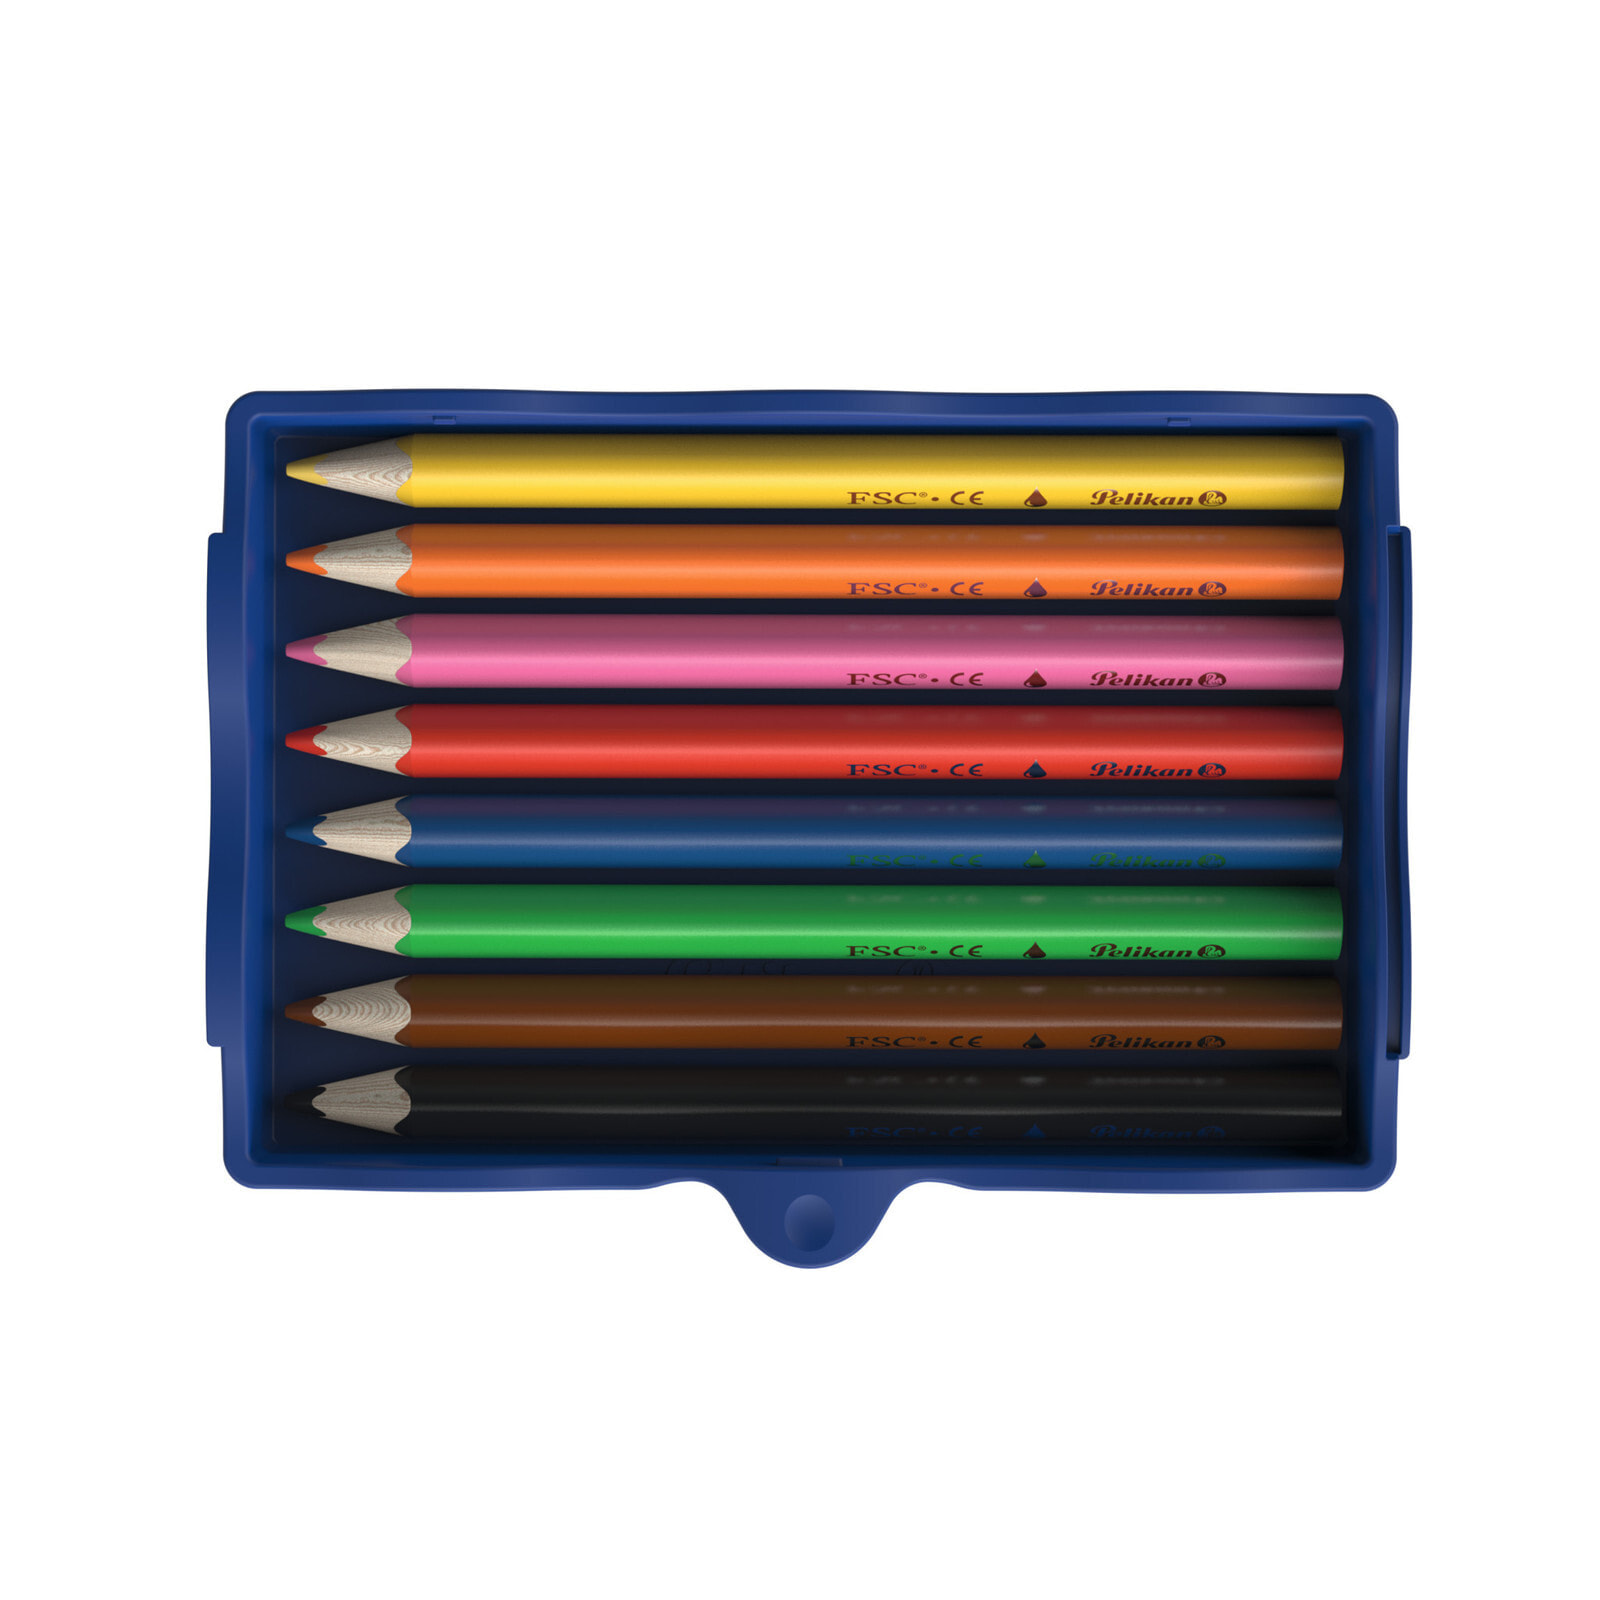 Pelikan Creative Factory цветной карандаш Черный, Синий, Коричневый, Зеленый, Оранжевый, Розовый, Красный, Желтый 8 шт 700894